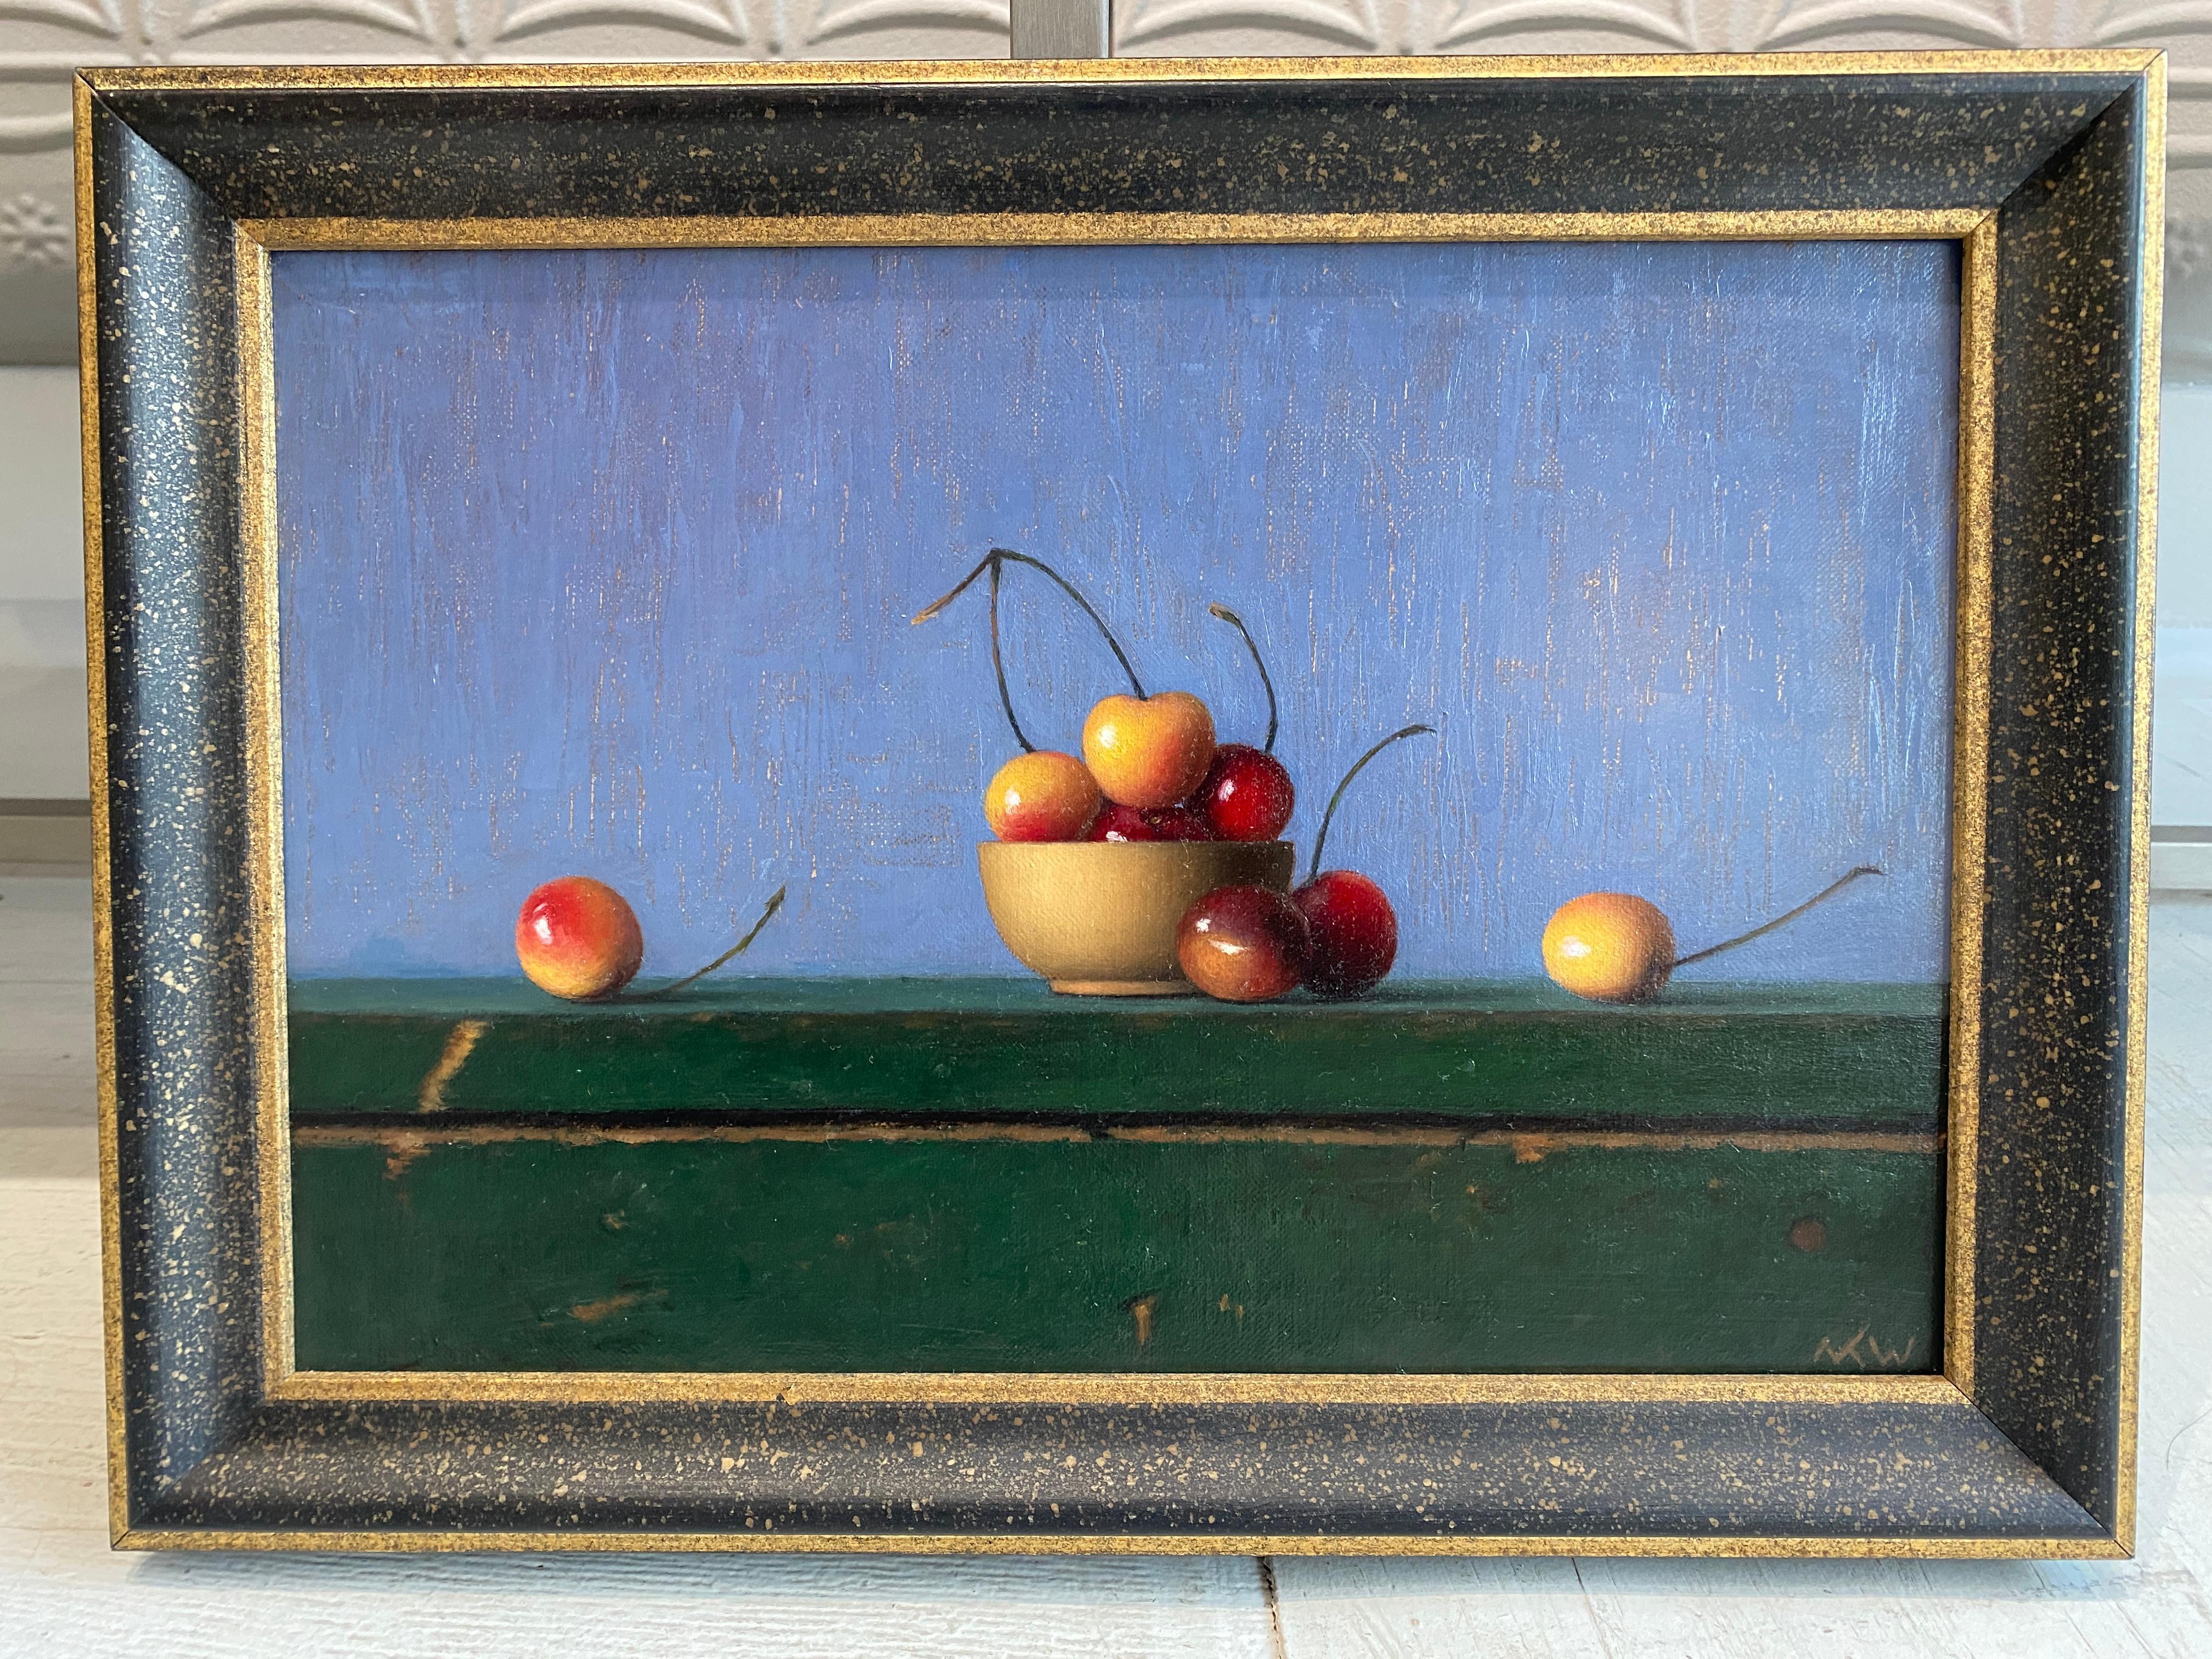 Cherries, Study - Painting by Matthew Weigle